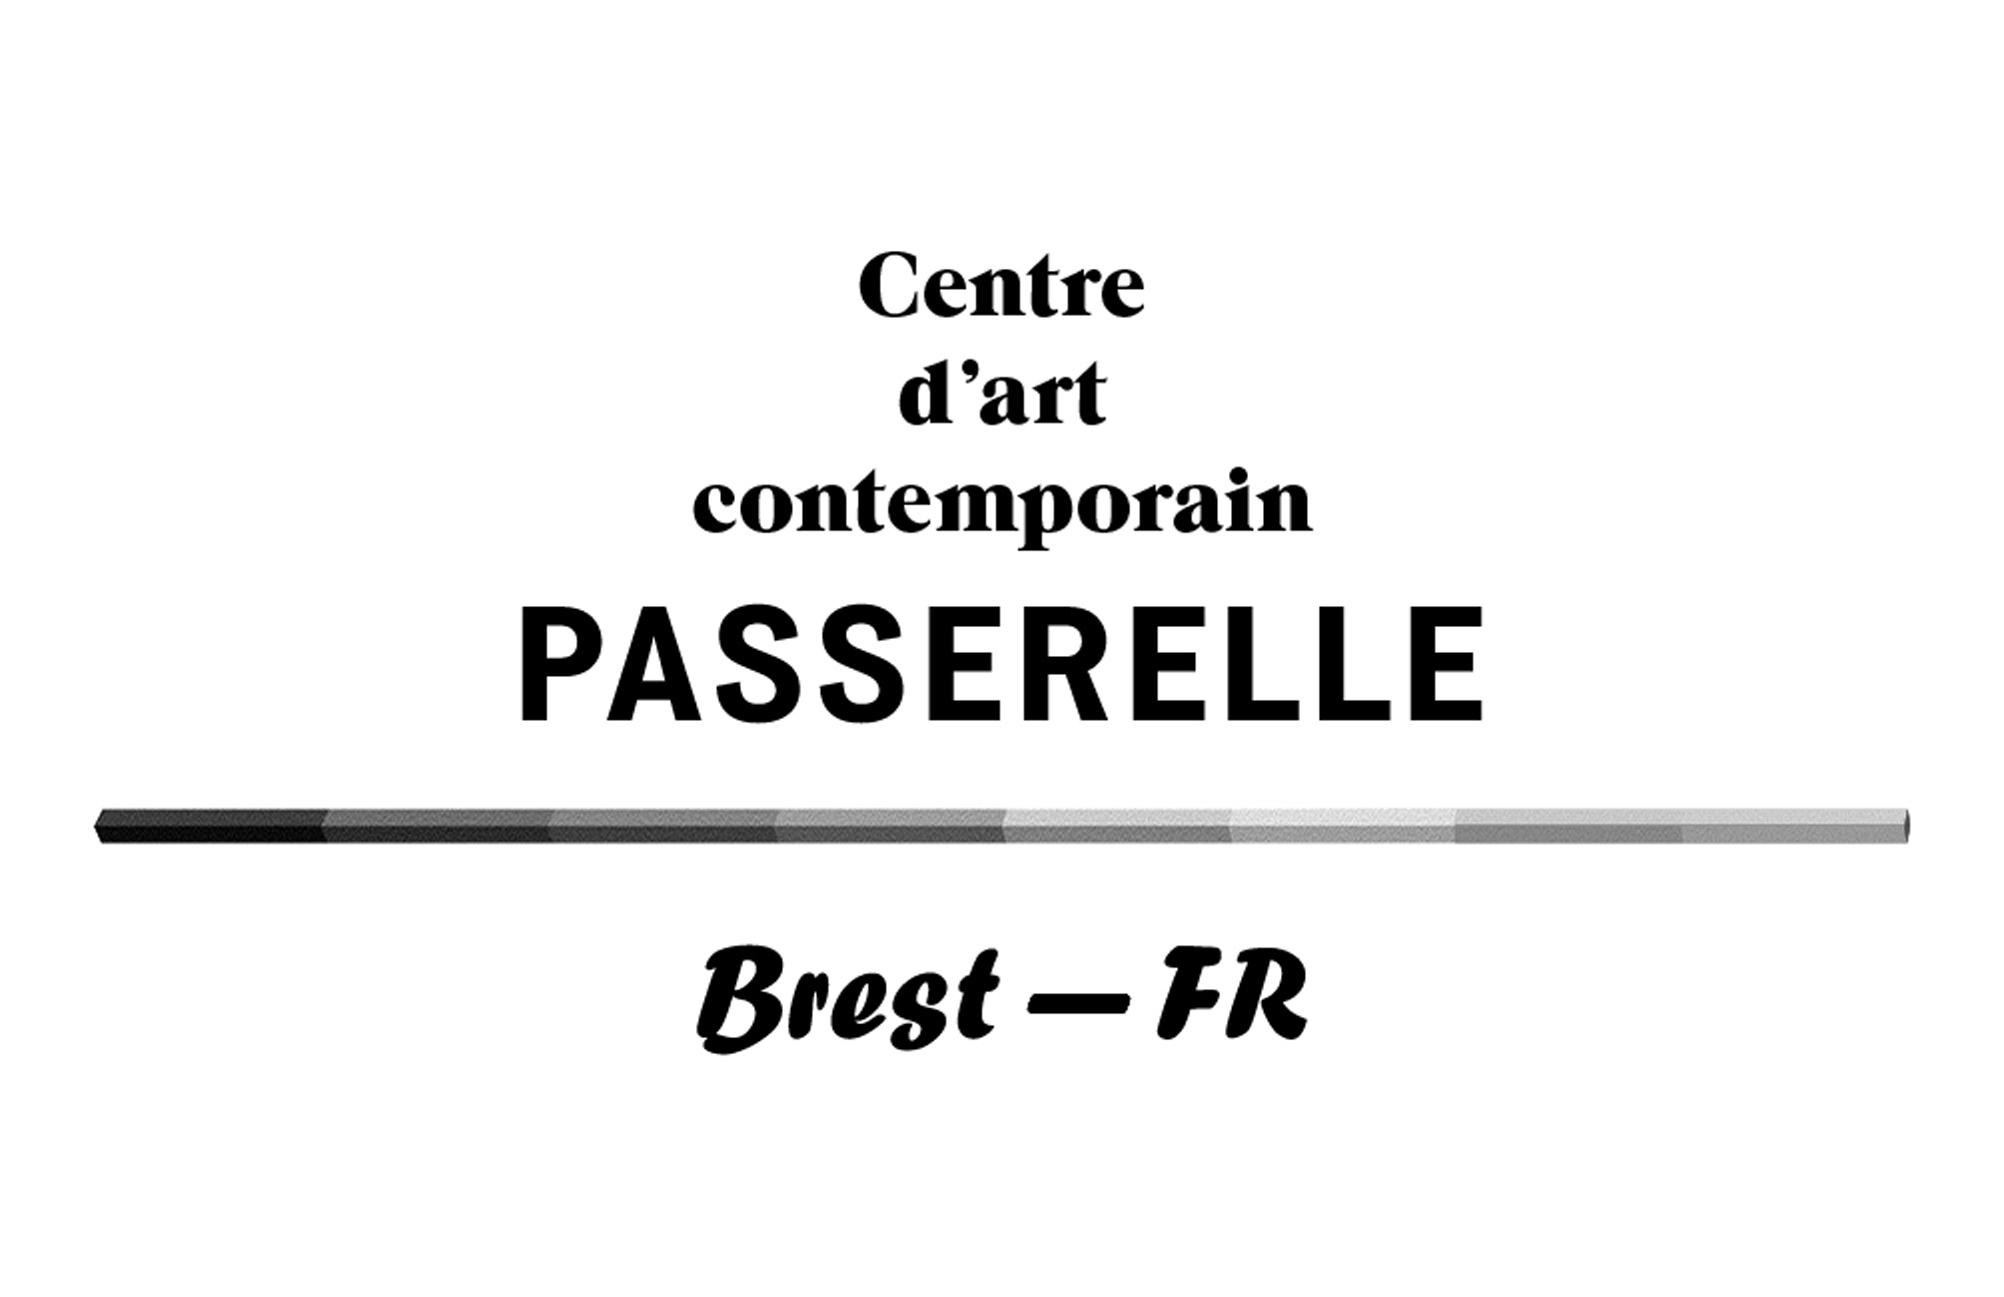 Passerelle Centre d'art contemporain